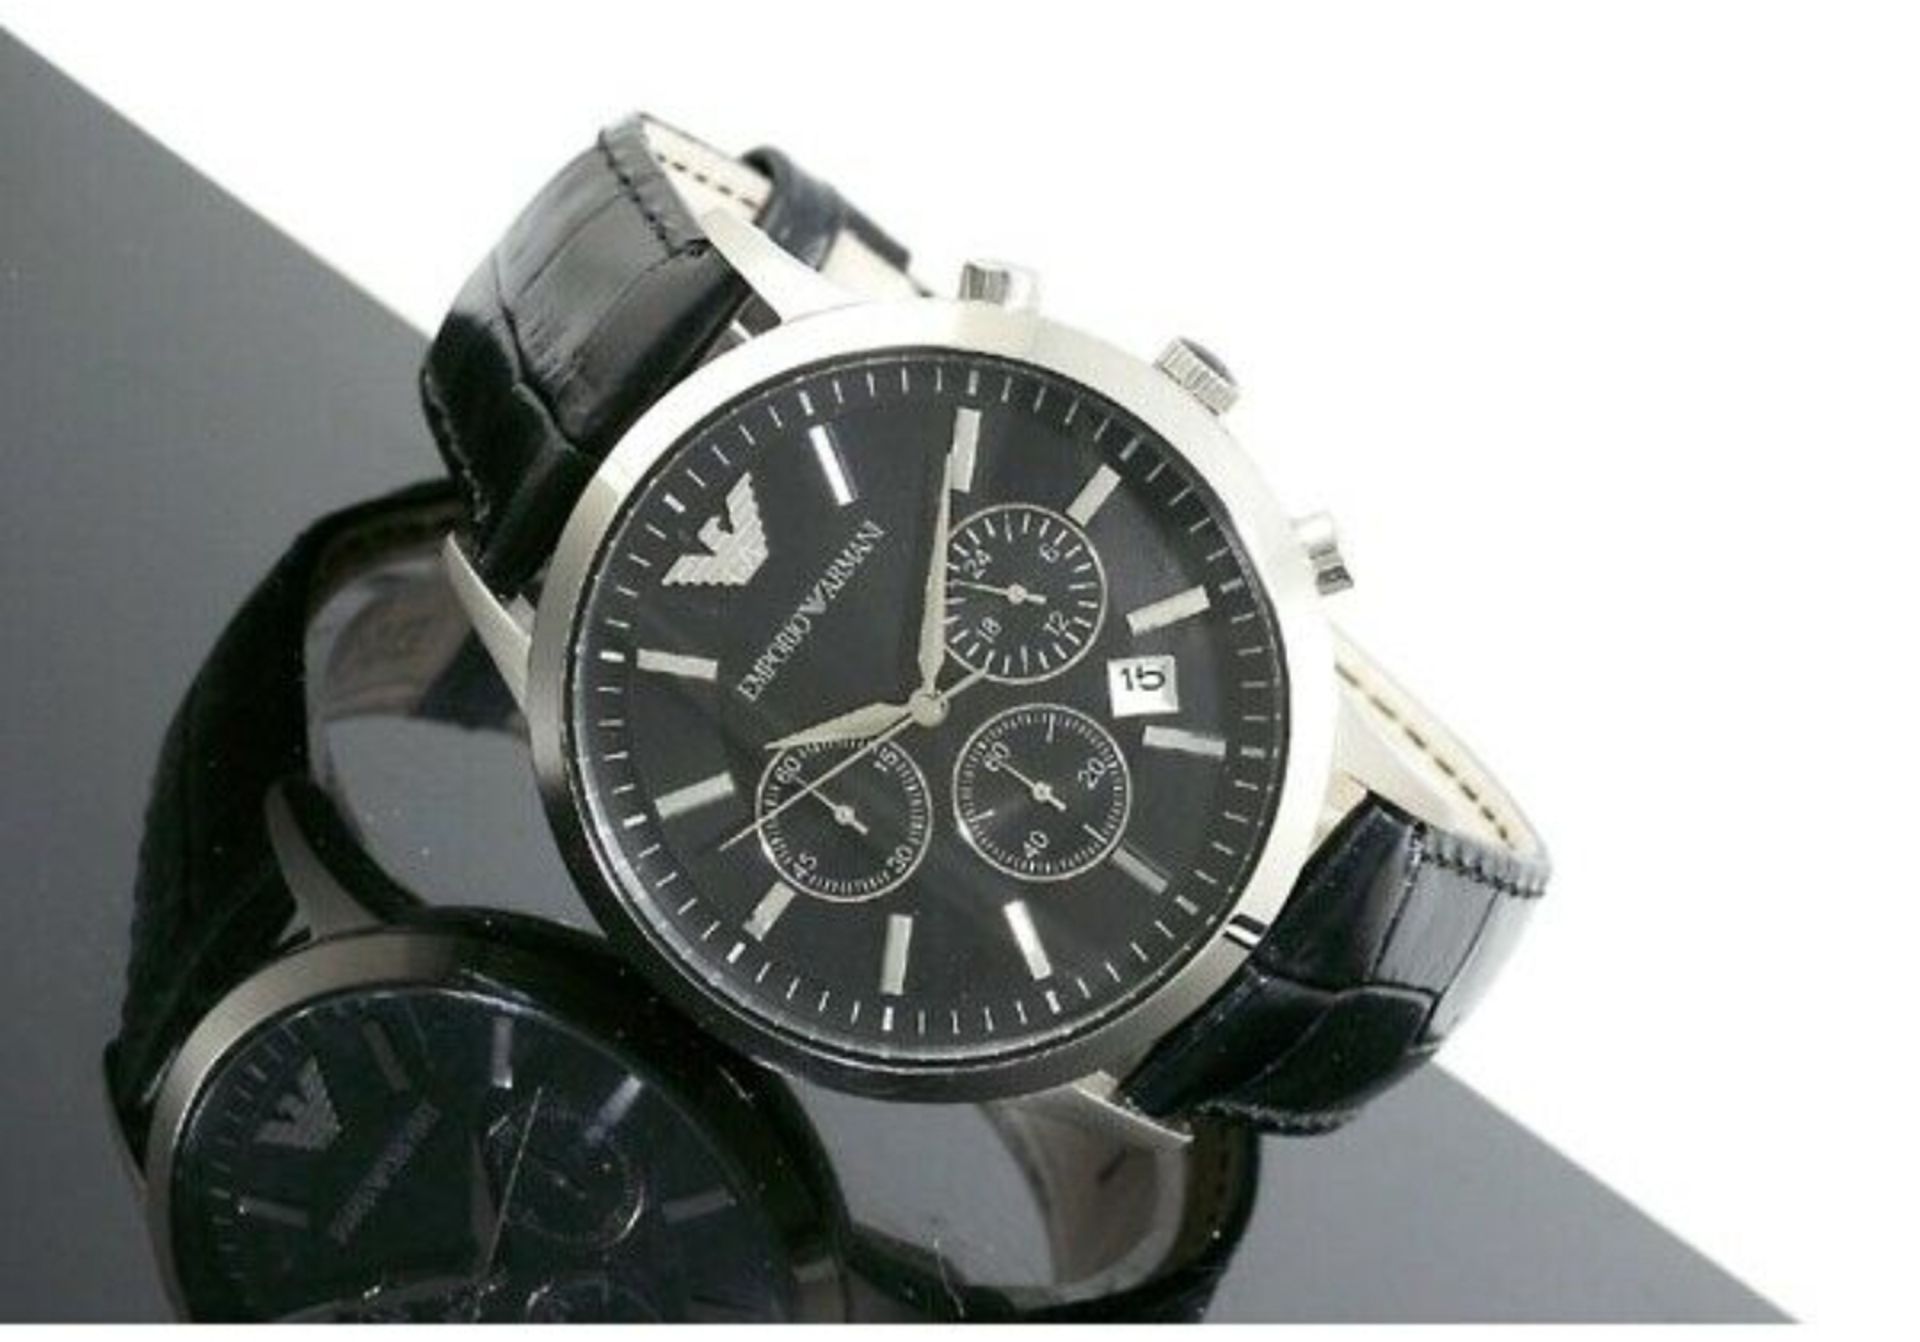 Emporio Armani AR2447 Men's Renato Black Leather Strap Chronograph Watch - Image 6 of 7